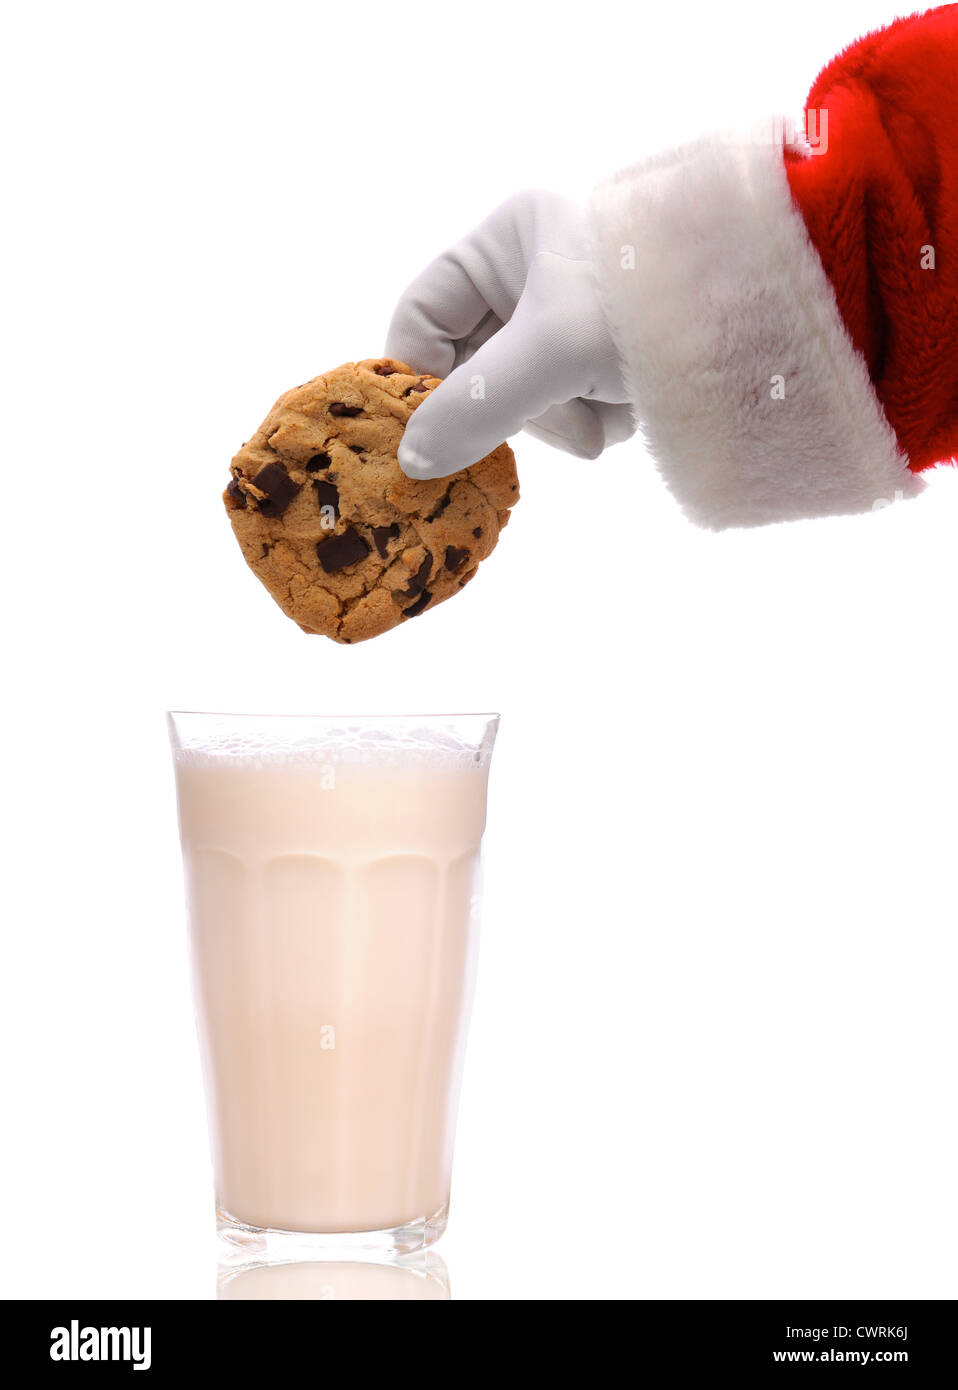 Santa Claus acerca a dunk una galleta de chocolate en un vaso de leche sobre un fondo blanco. Foto de stock